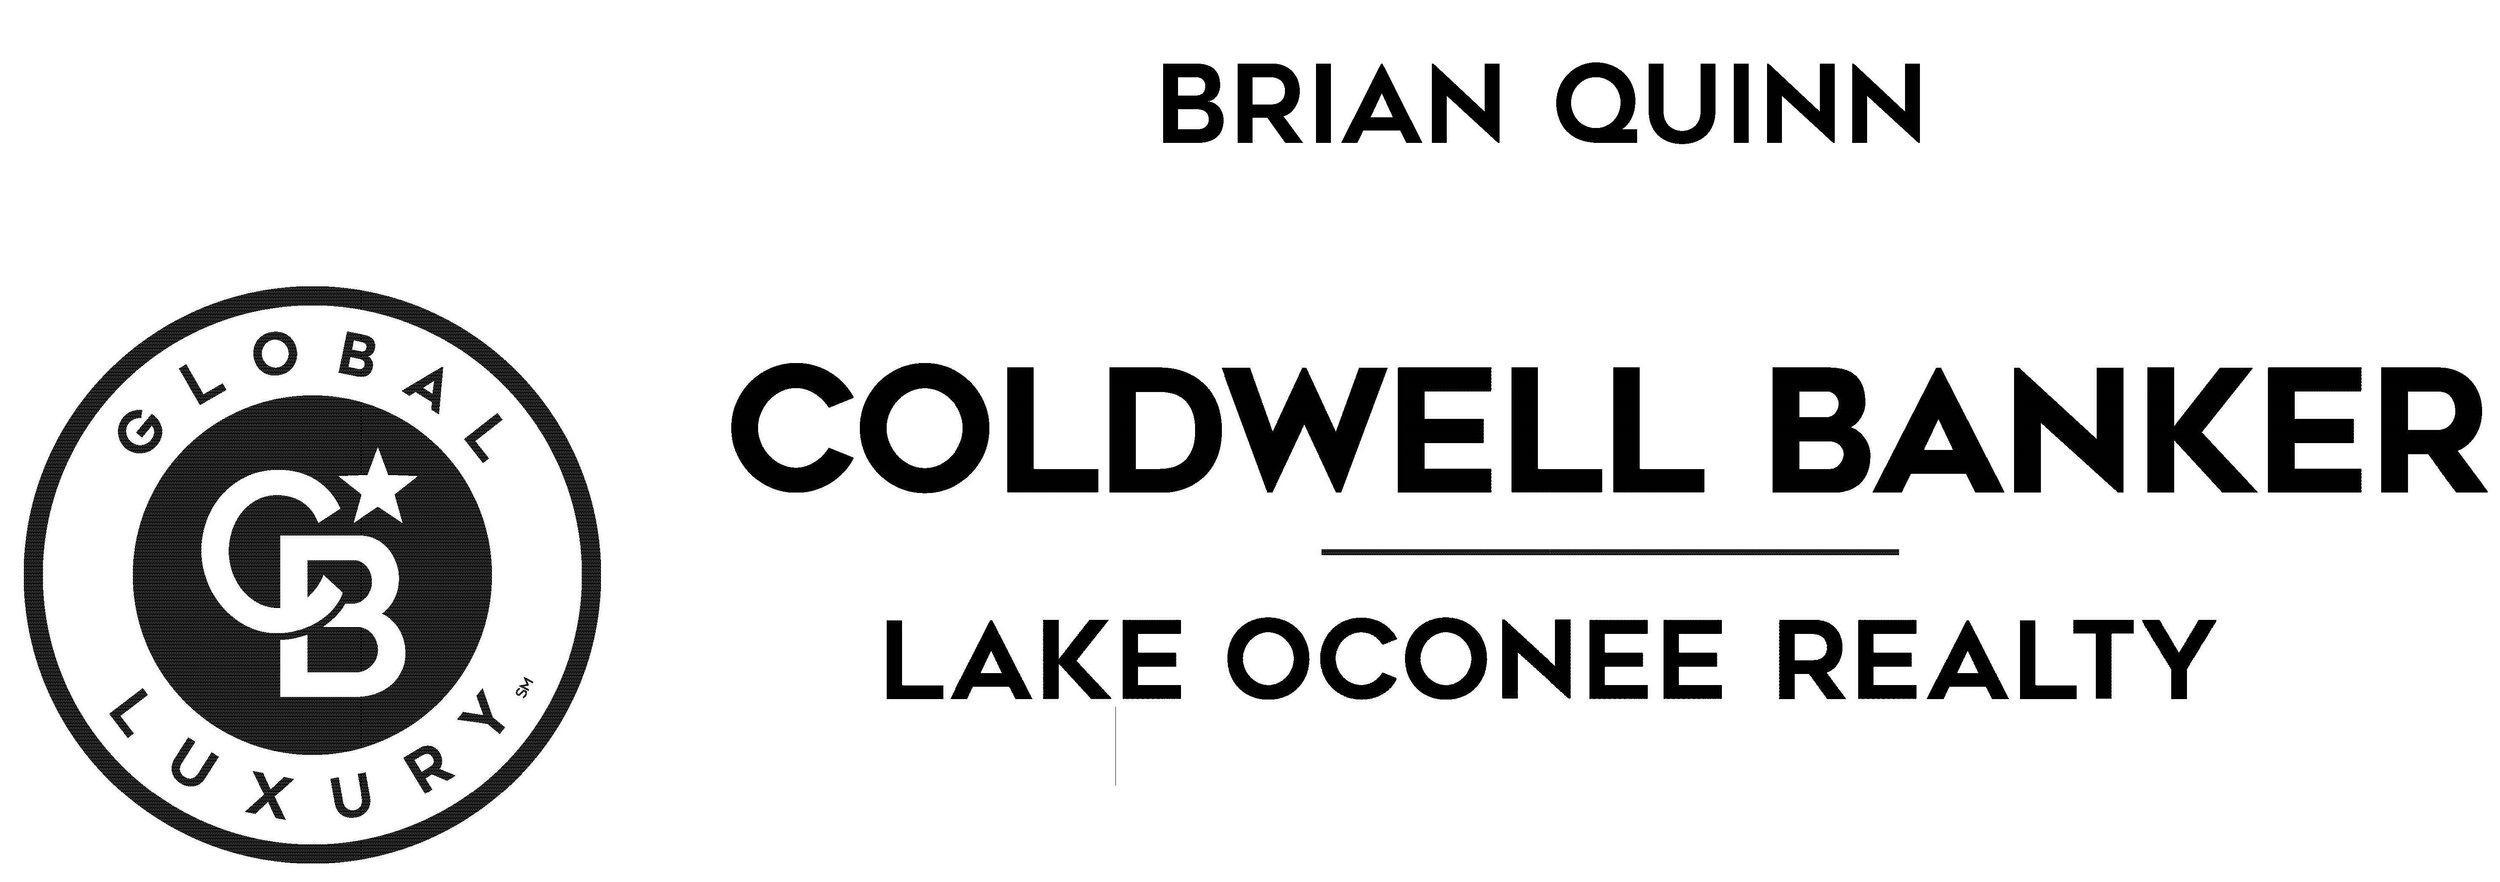 Brian Quinn Coldwell Banker.jpg